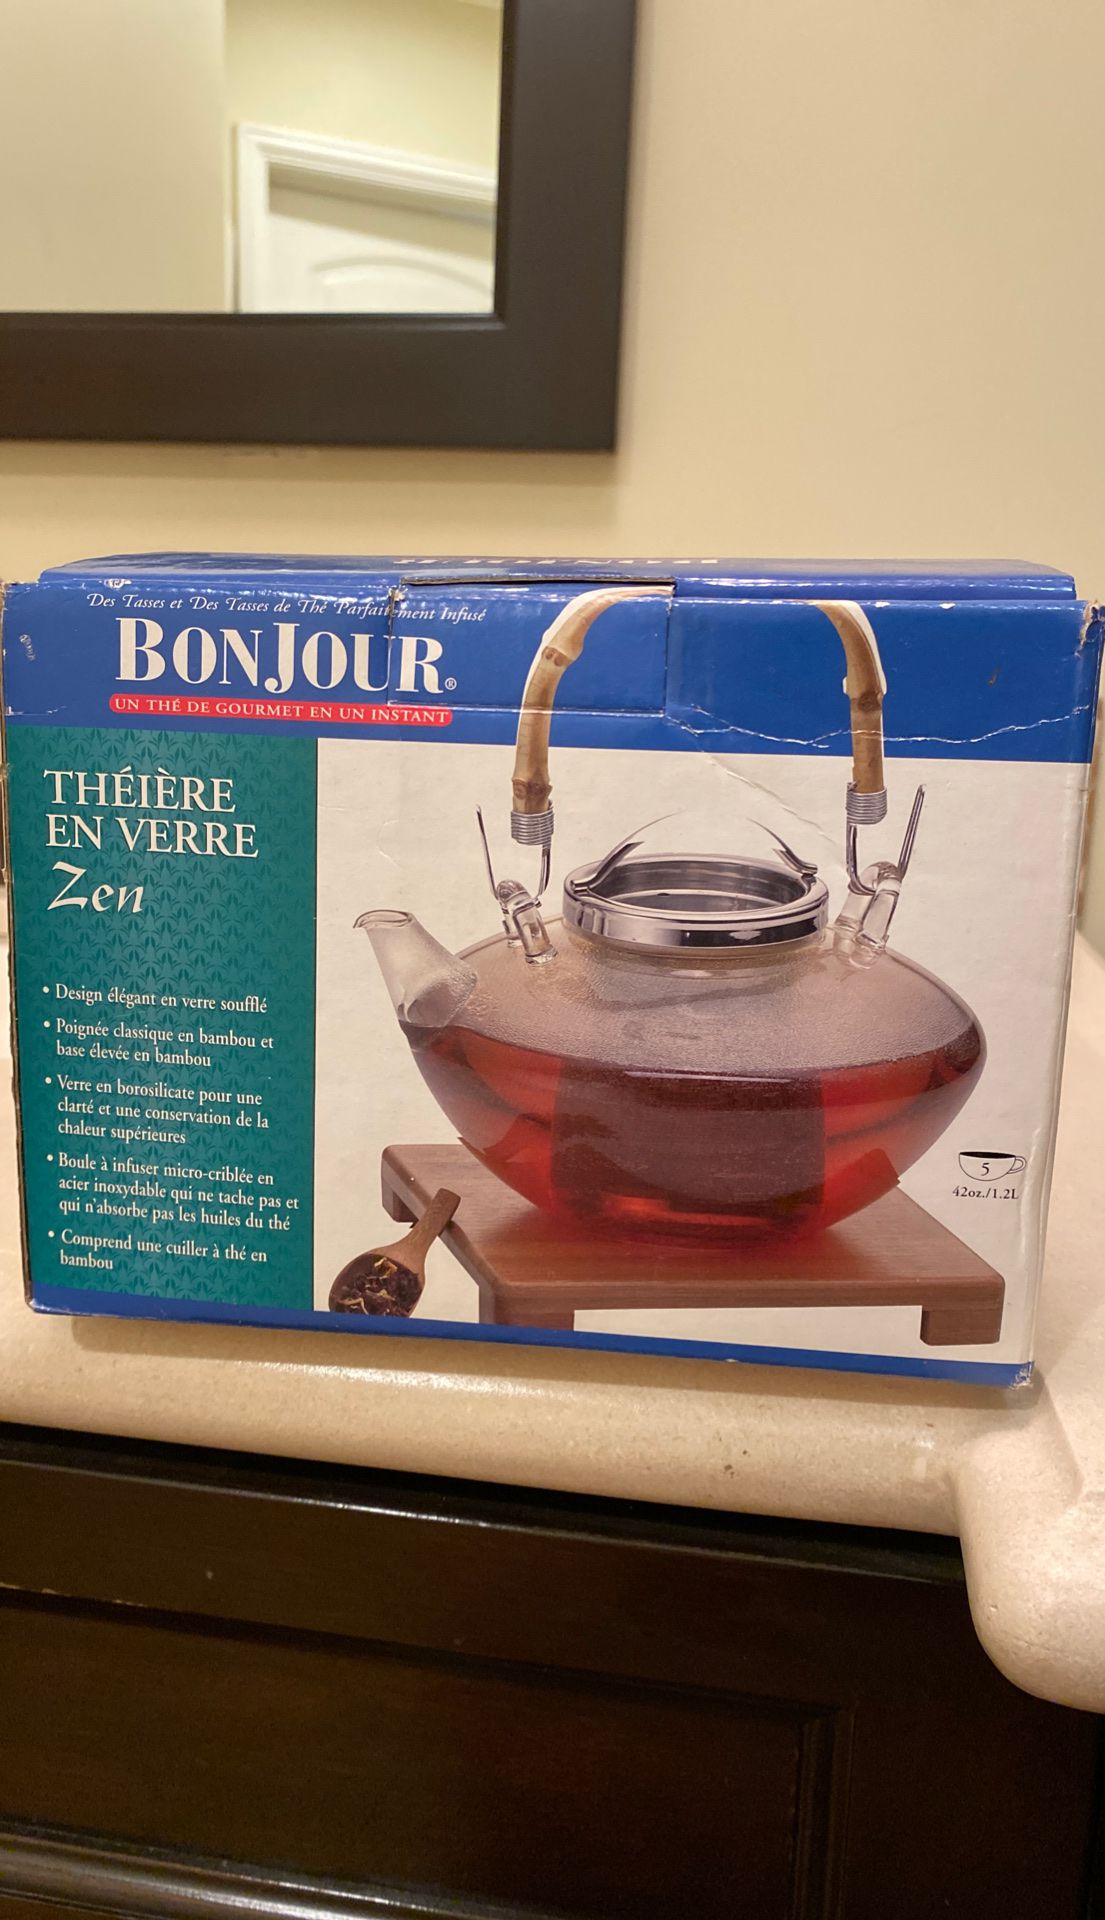 Bonjour Glass tea kettle